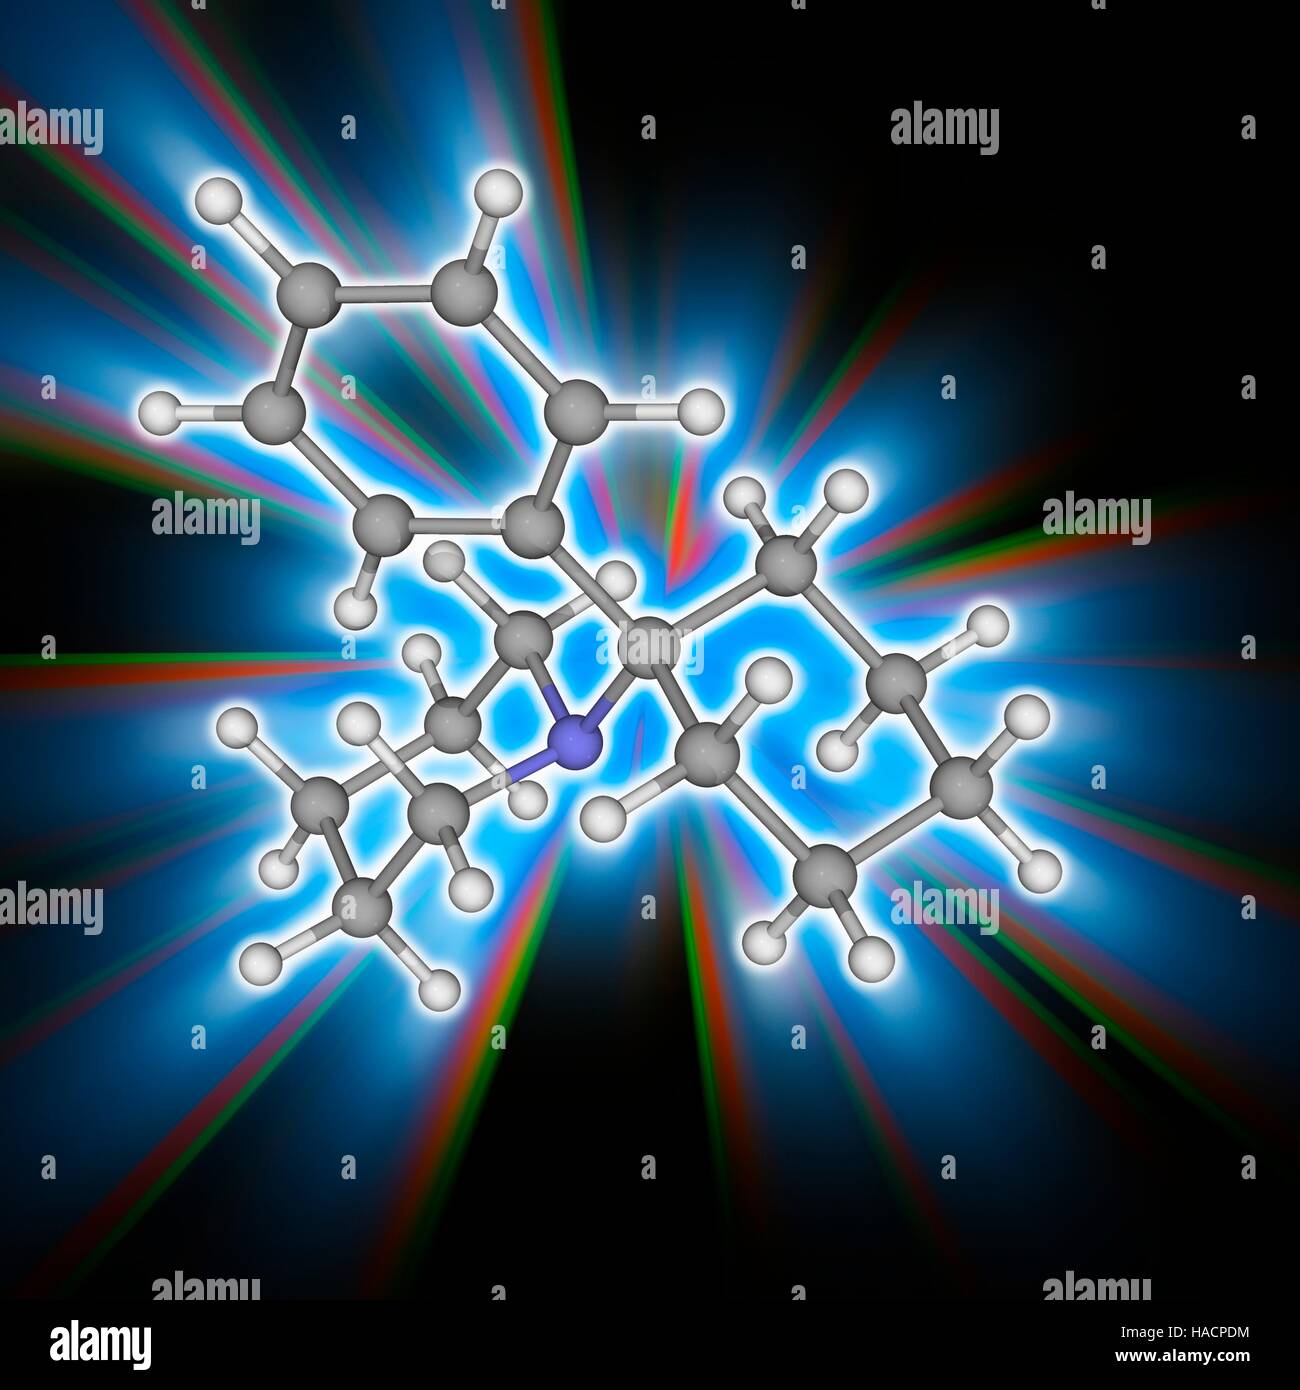 PCP-Droge. Molekülmodell der dissoziativen Drogen Phencyclidin (PCP, C17. H25. (N), auch bekannt als Angel Dust. Halluzinogene und neurotoxisch wirkt. Atome als Kugeln dargestellt werden und sind farblich gekennzeichnet: Kohlenstoff (grau), Wasserstoff (weiß) und Stickstoff (blau). Abbildung. Stockfoto